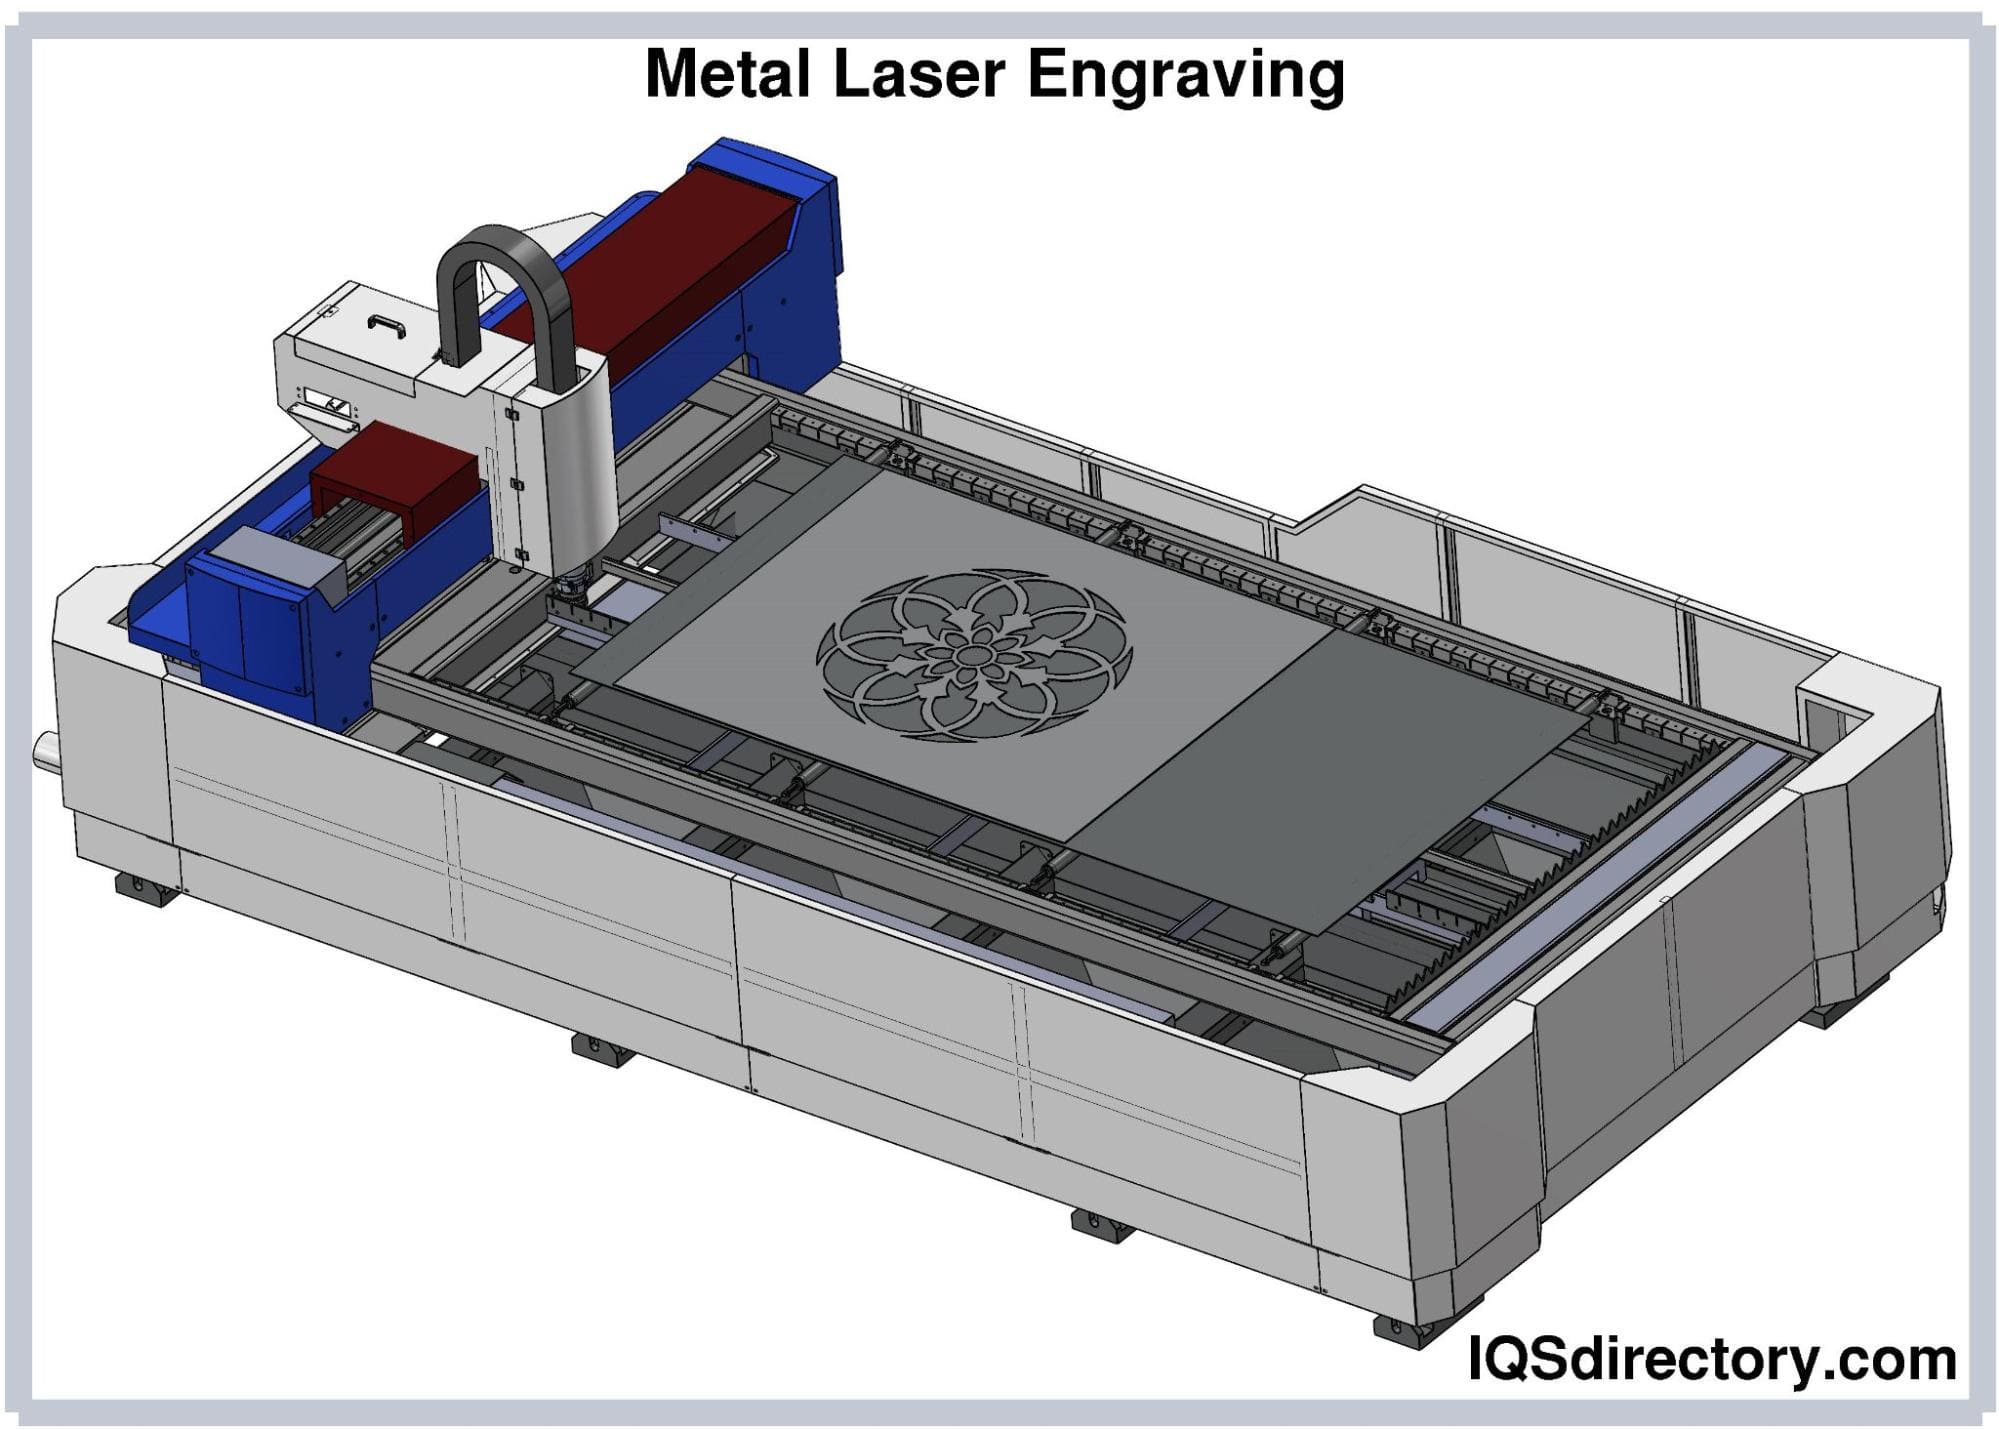 Metal Laser Engraving